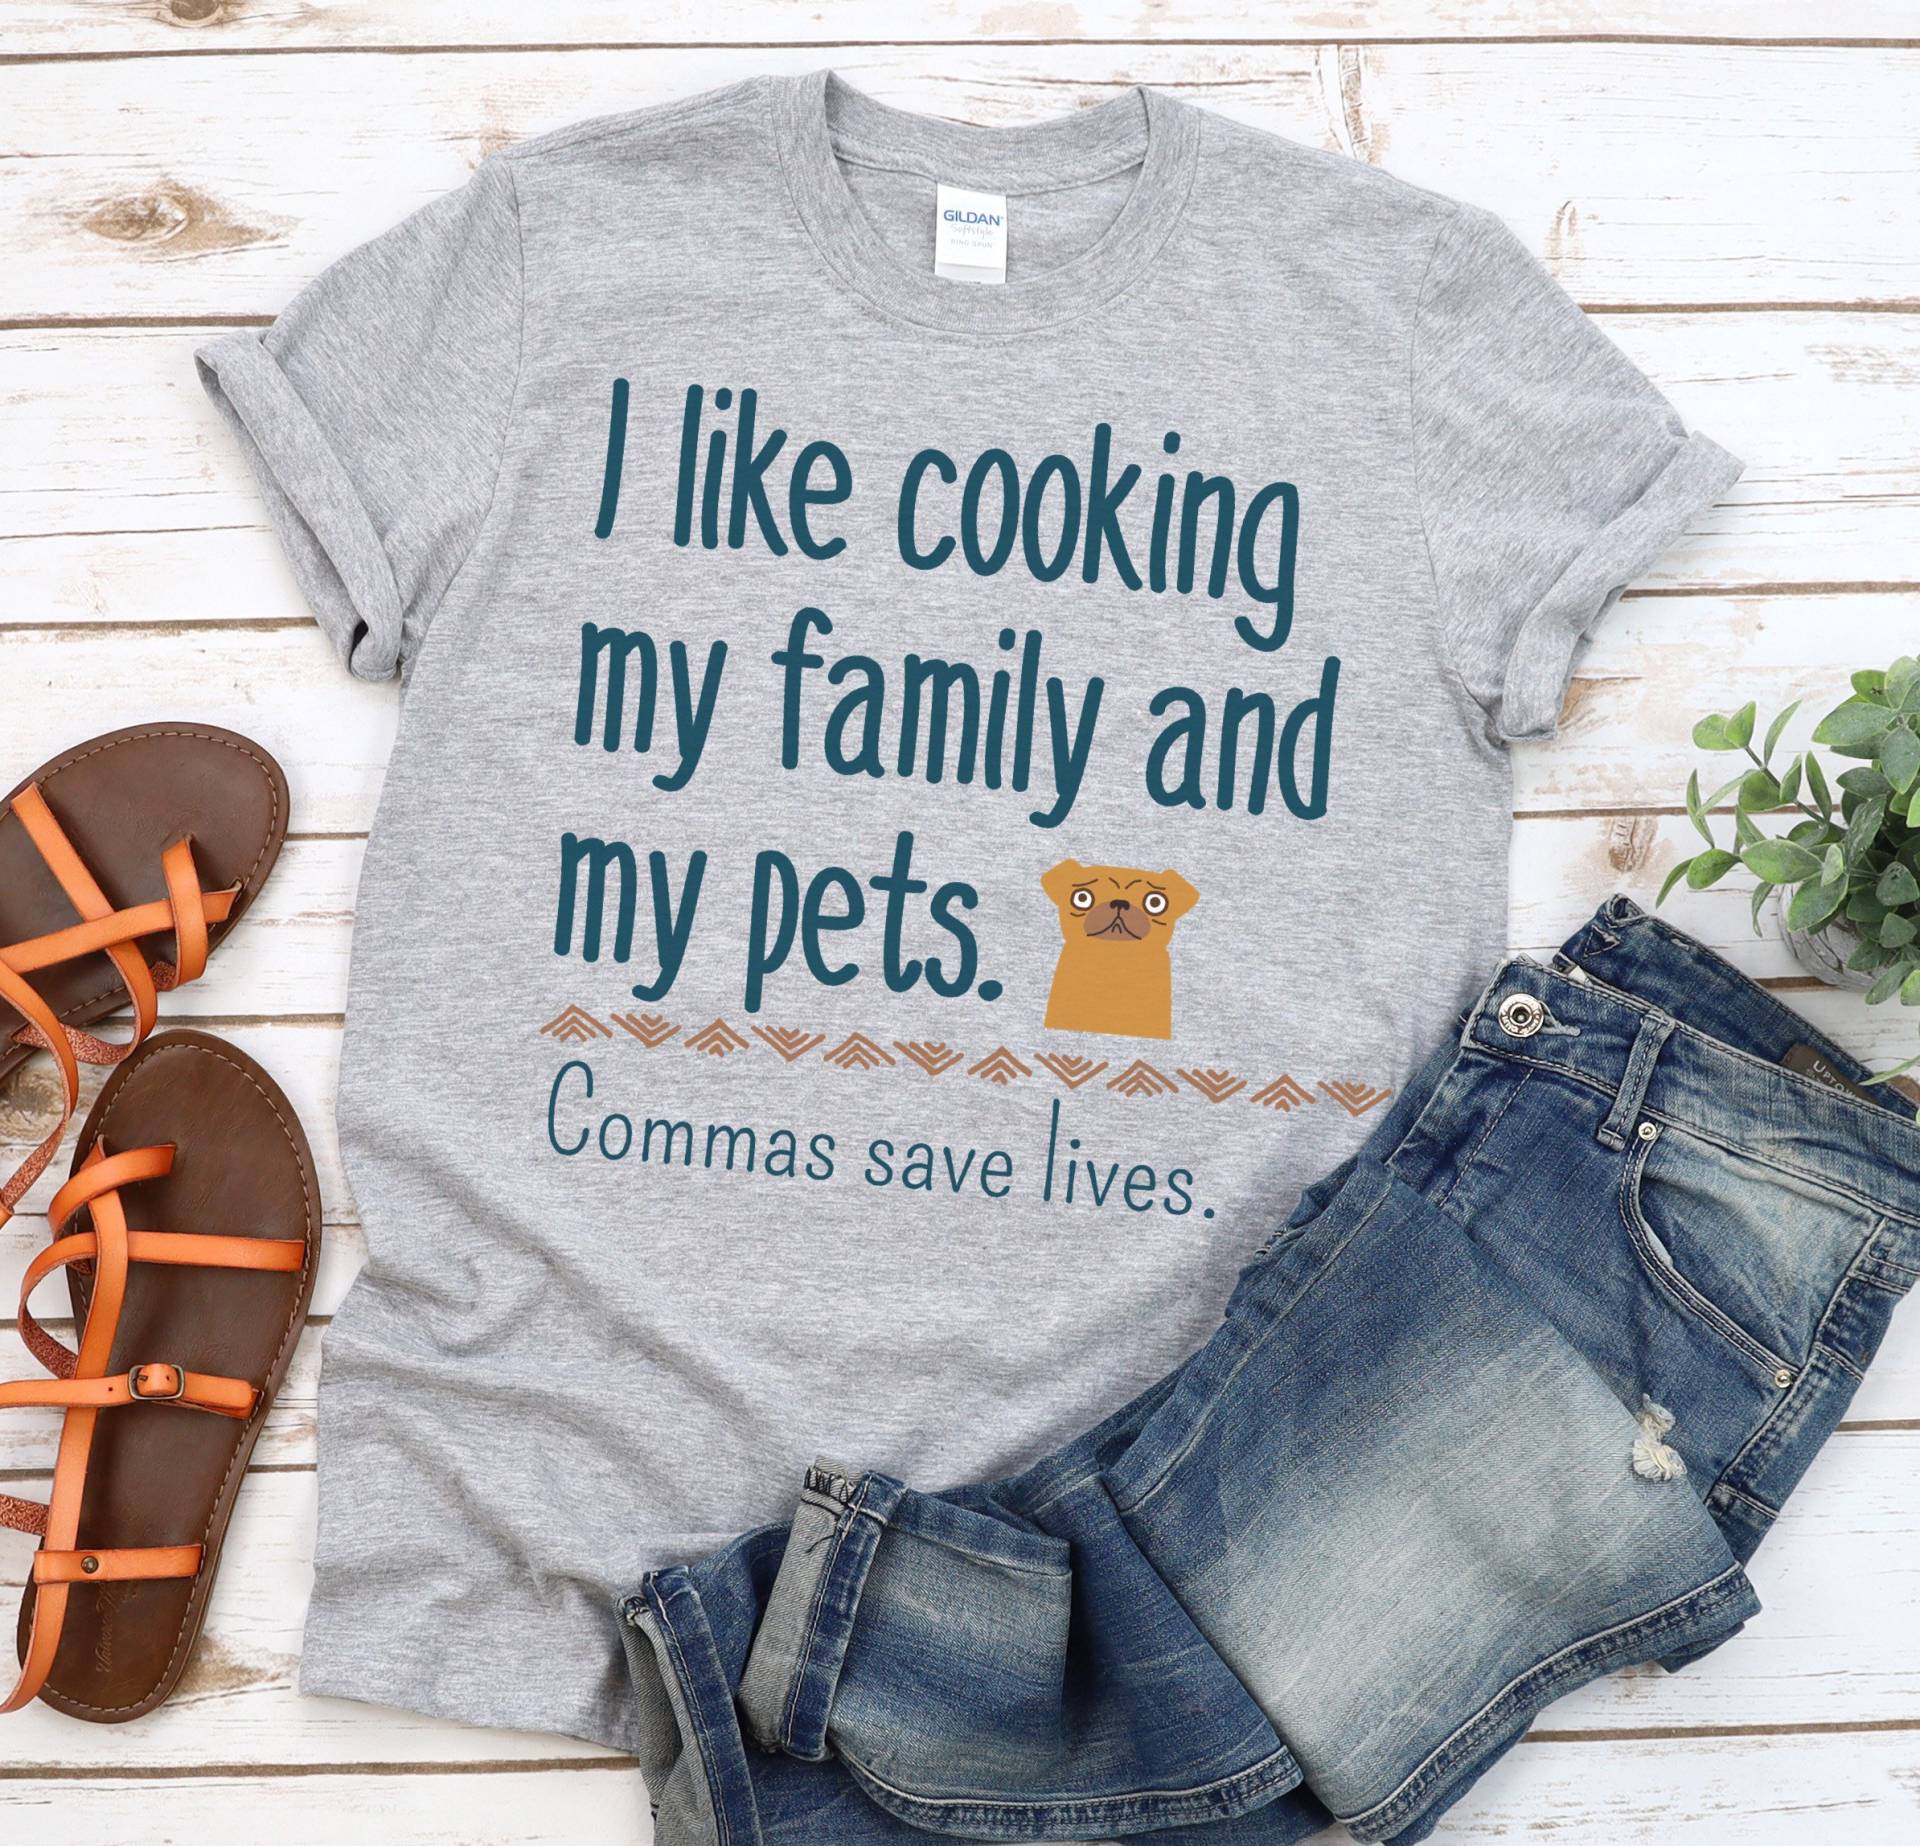 Ich Koche Gerne Meine Familie Und Haustiere Kommas Save Lives Shirt, Englisch Lehrer Leselehrer Unterricht Shirts, Grammatik Shirt von RootedInChristStudio